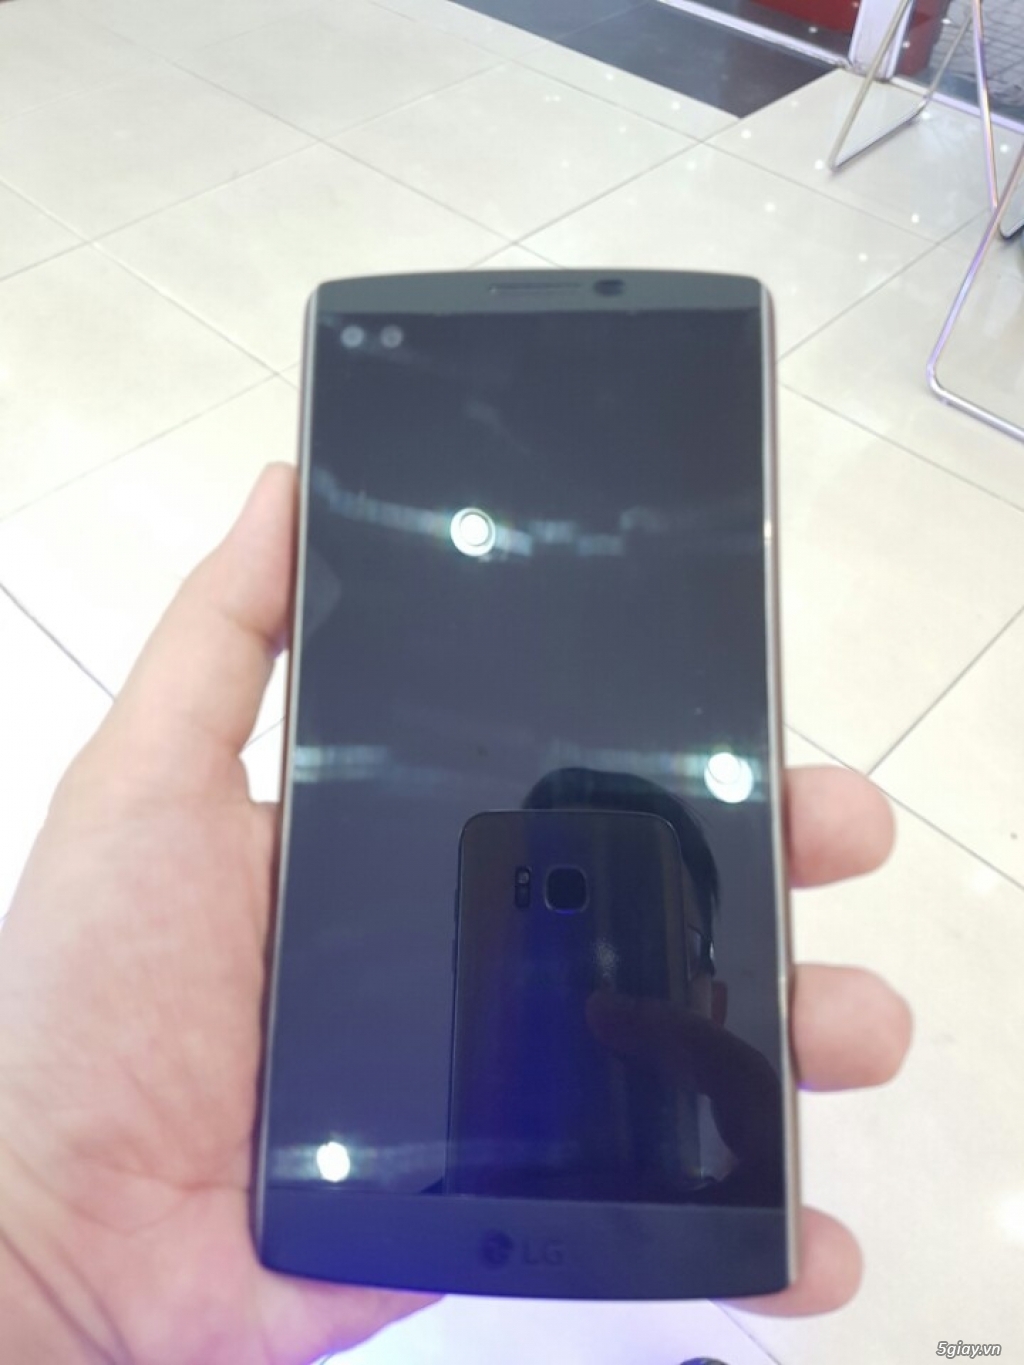 LG V10 H901 T-Mobile quốc tế còn BH Didongviet 04/10/2016 like new - 2